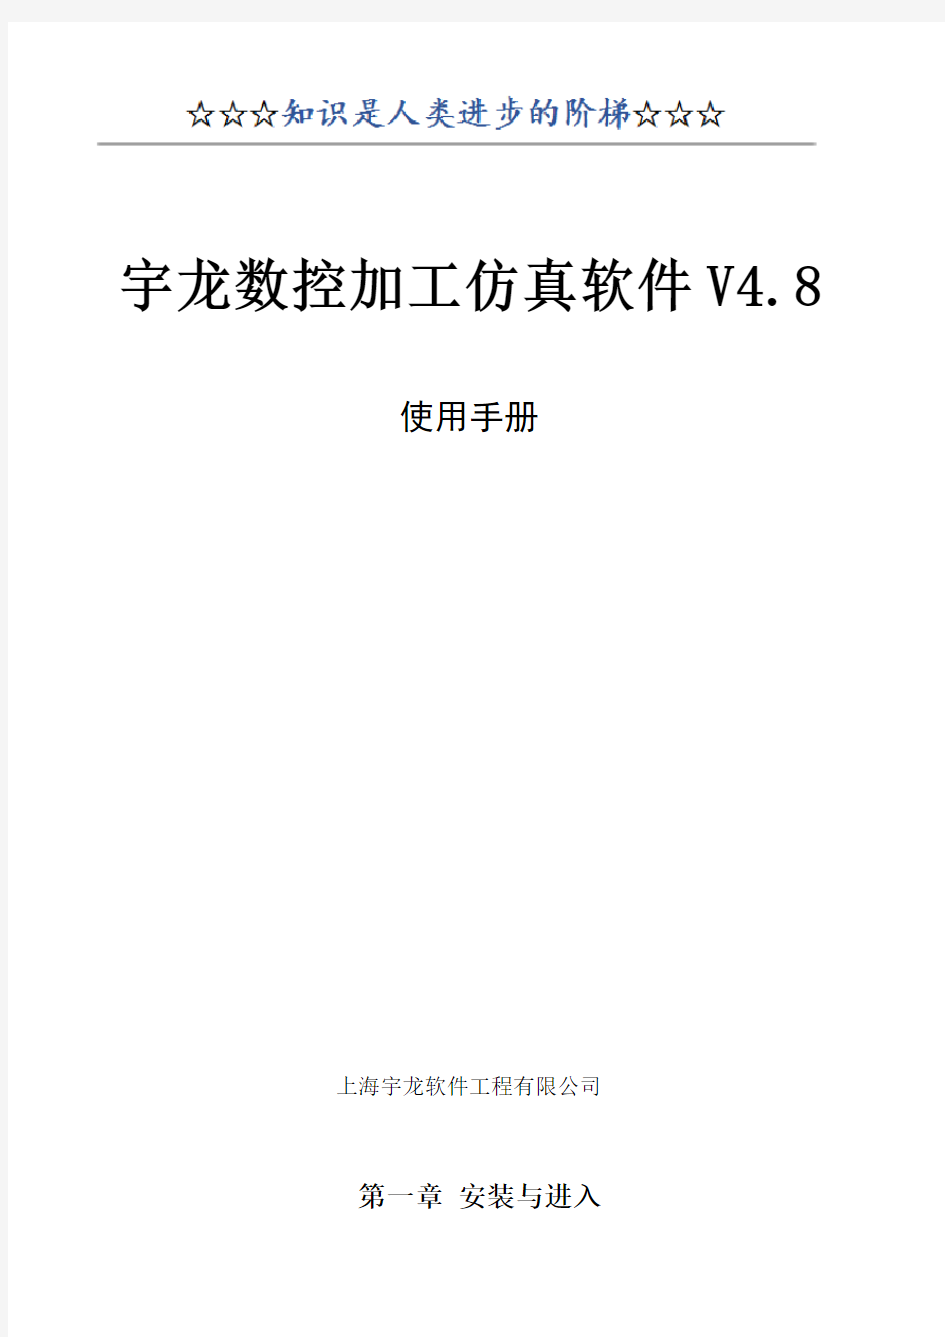 宇龙数控加工仿真软件V4.8使用手册